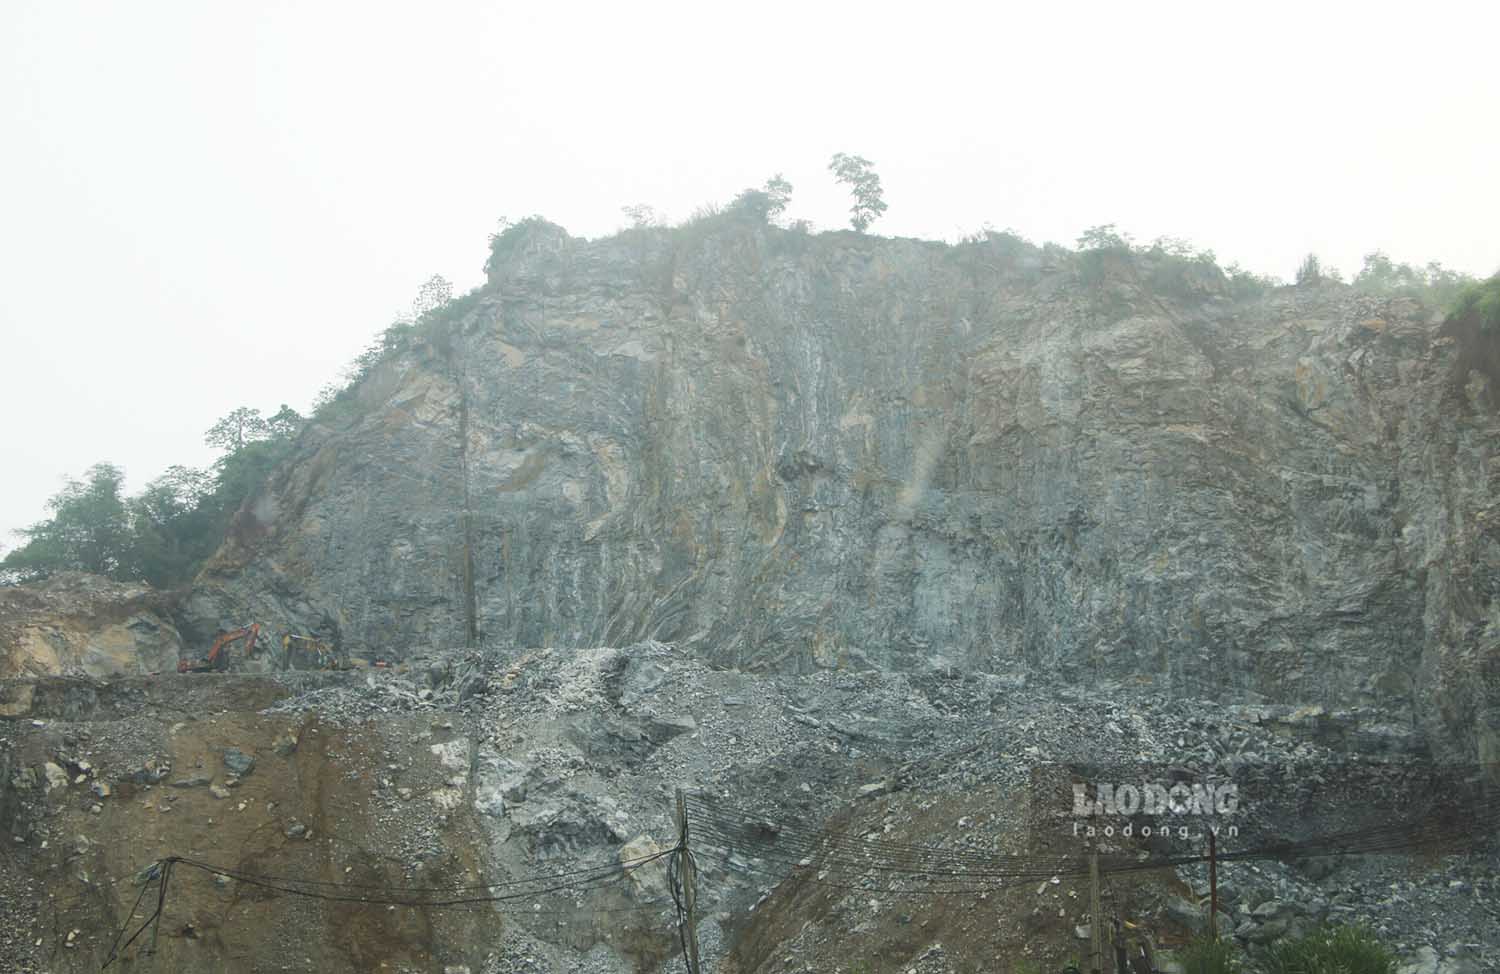 Hoạt động nổ mìn khai thác đá tại mỏ đá núi Quậy đã trở thành nỗi ám ảnh với người dân.